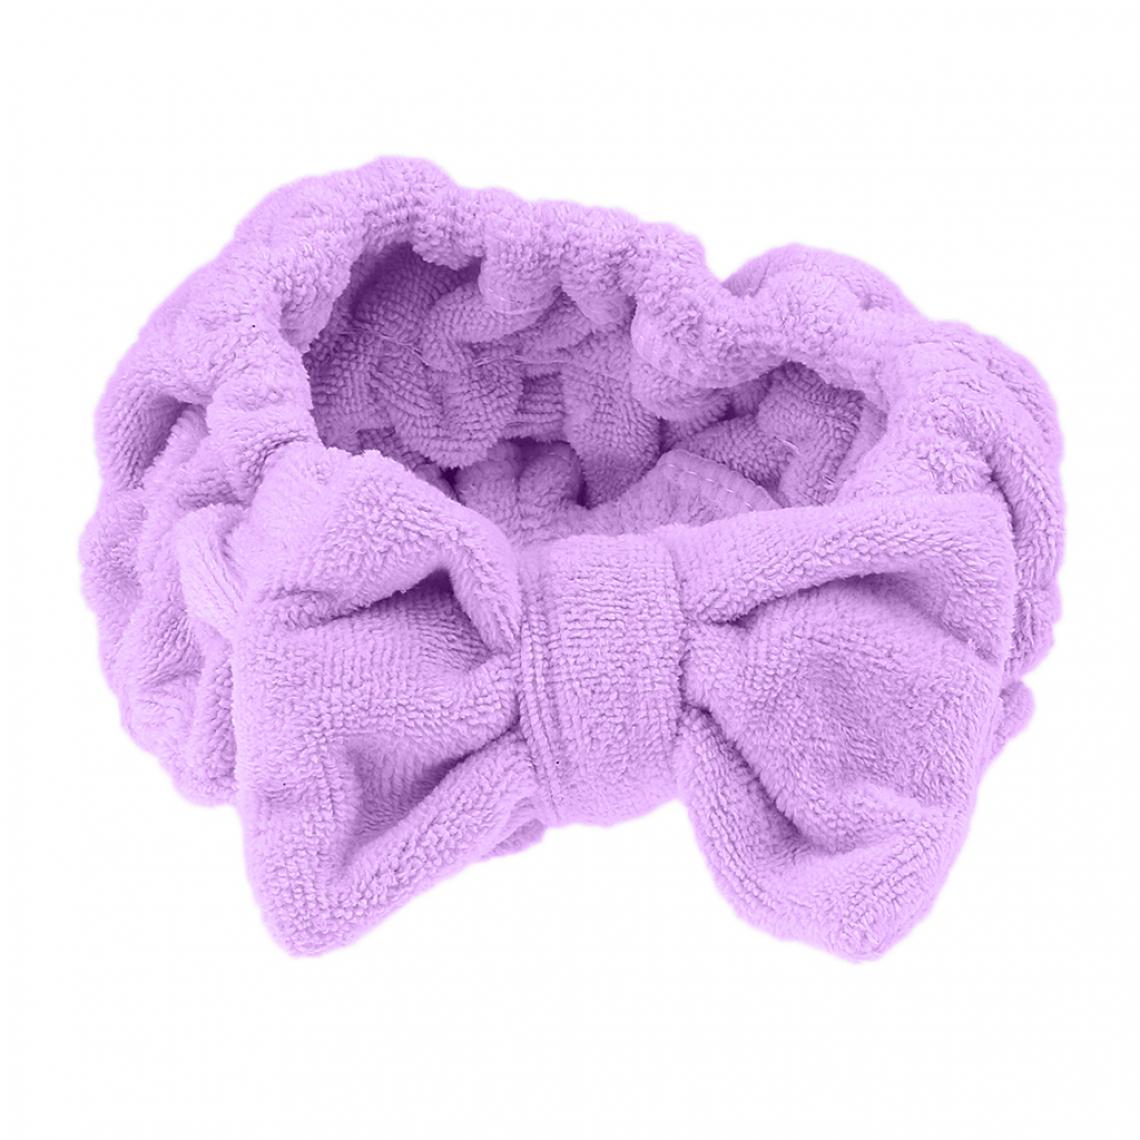 marque generique - Doux bowknot maquillage bain de douche cosmétiques spa élastique bande de cheveux bande bande rose - Perles